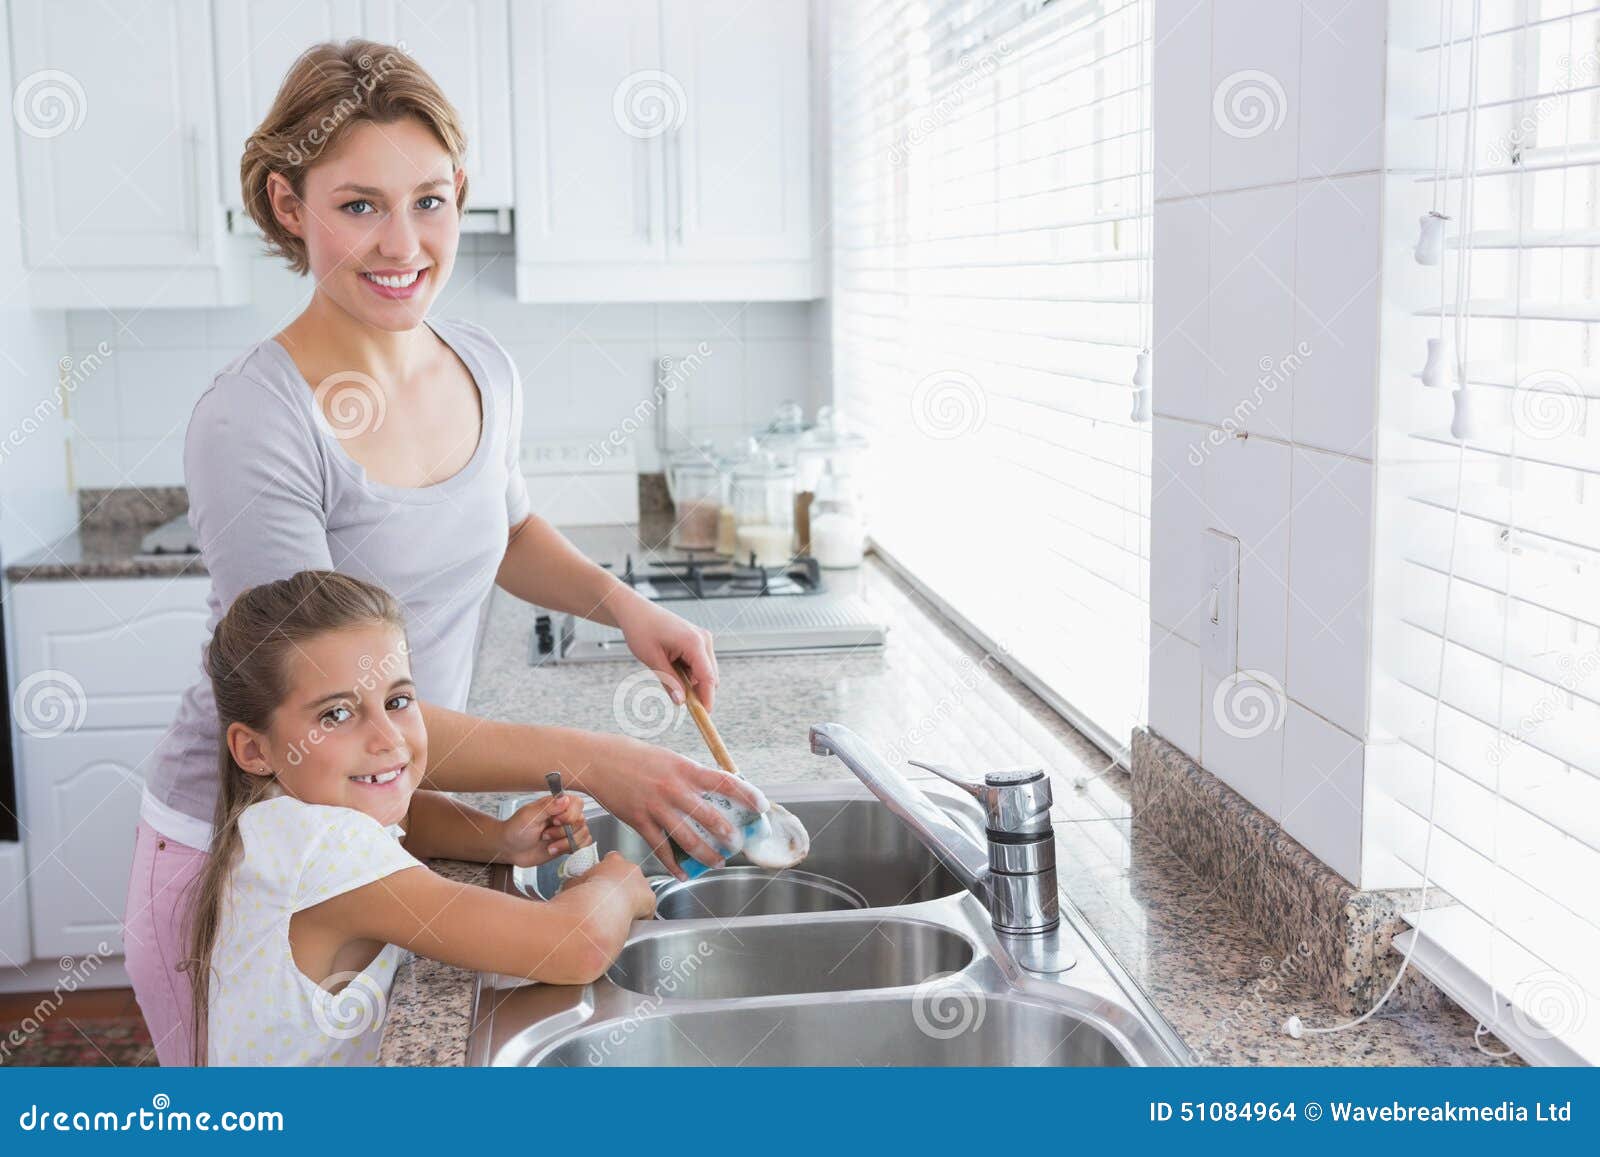 Дочка моет посуду. Мыть посуду. Мама моет посуду. Мама с дочкой моют посуду.